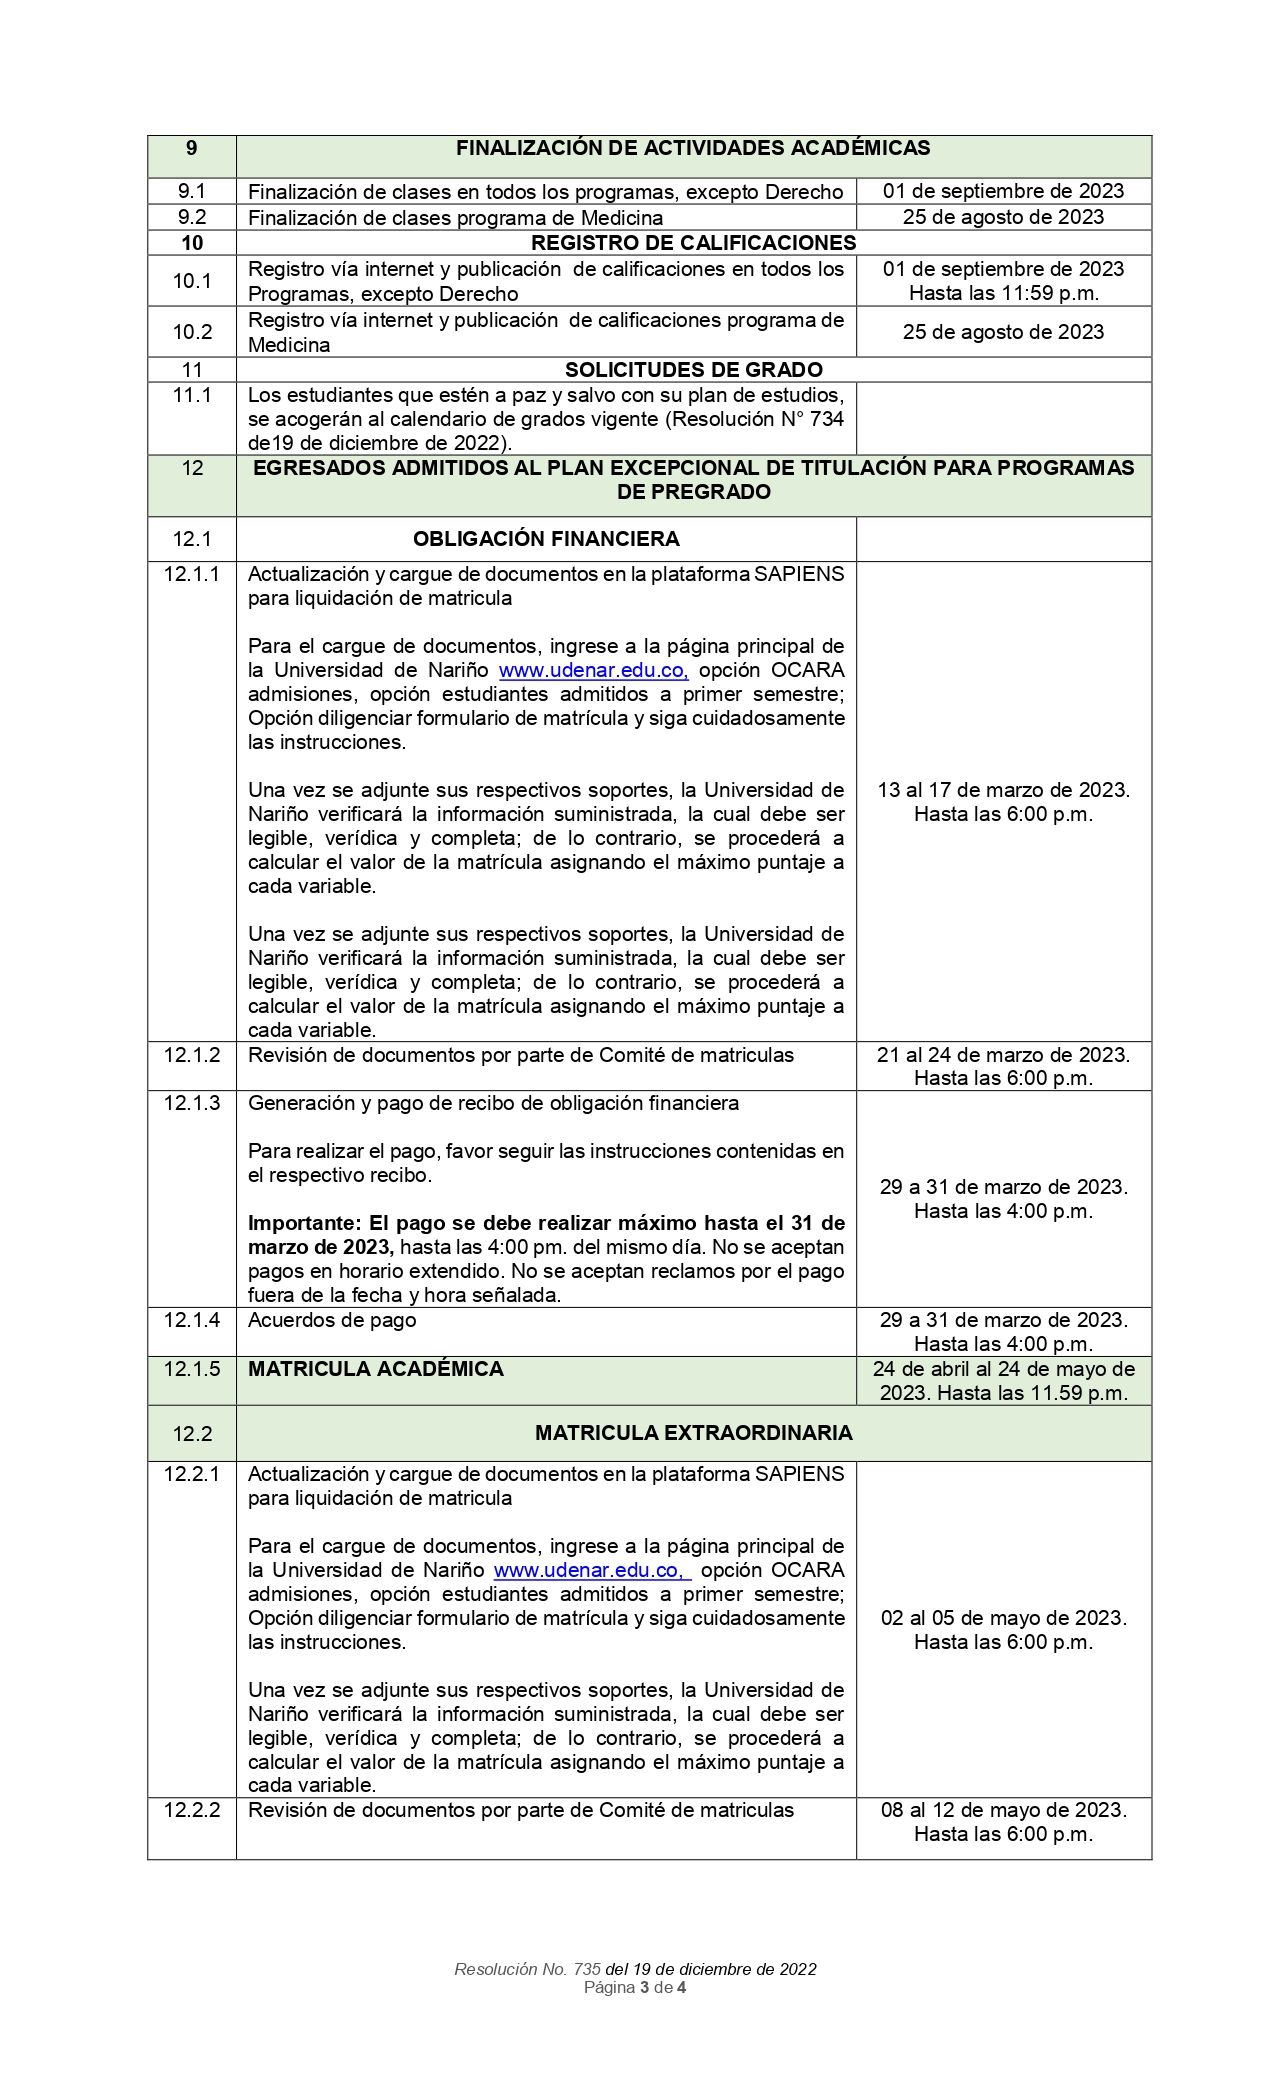 resolucion_no_735_2022_calendario_plan_excepcional_de_titulaciónA2023_page-0003